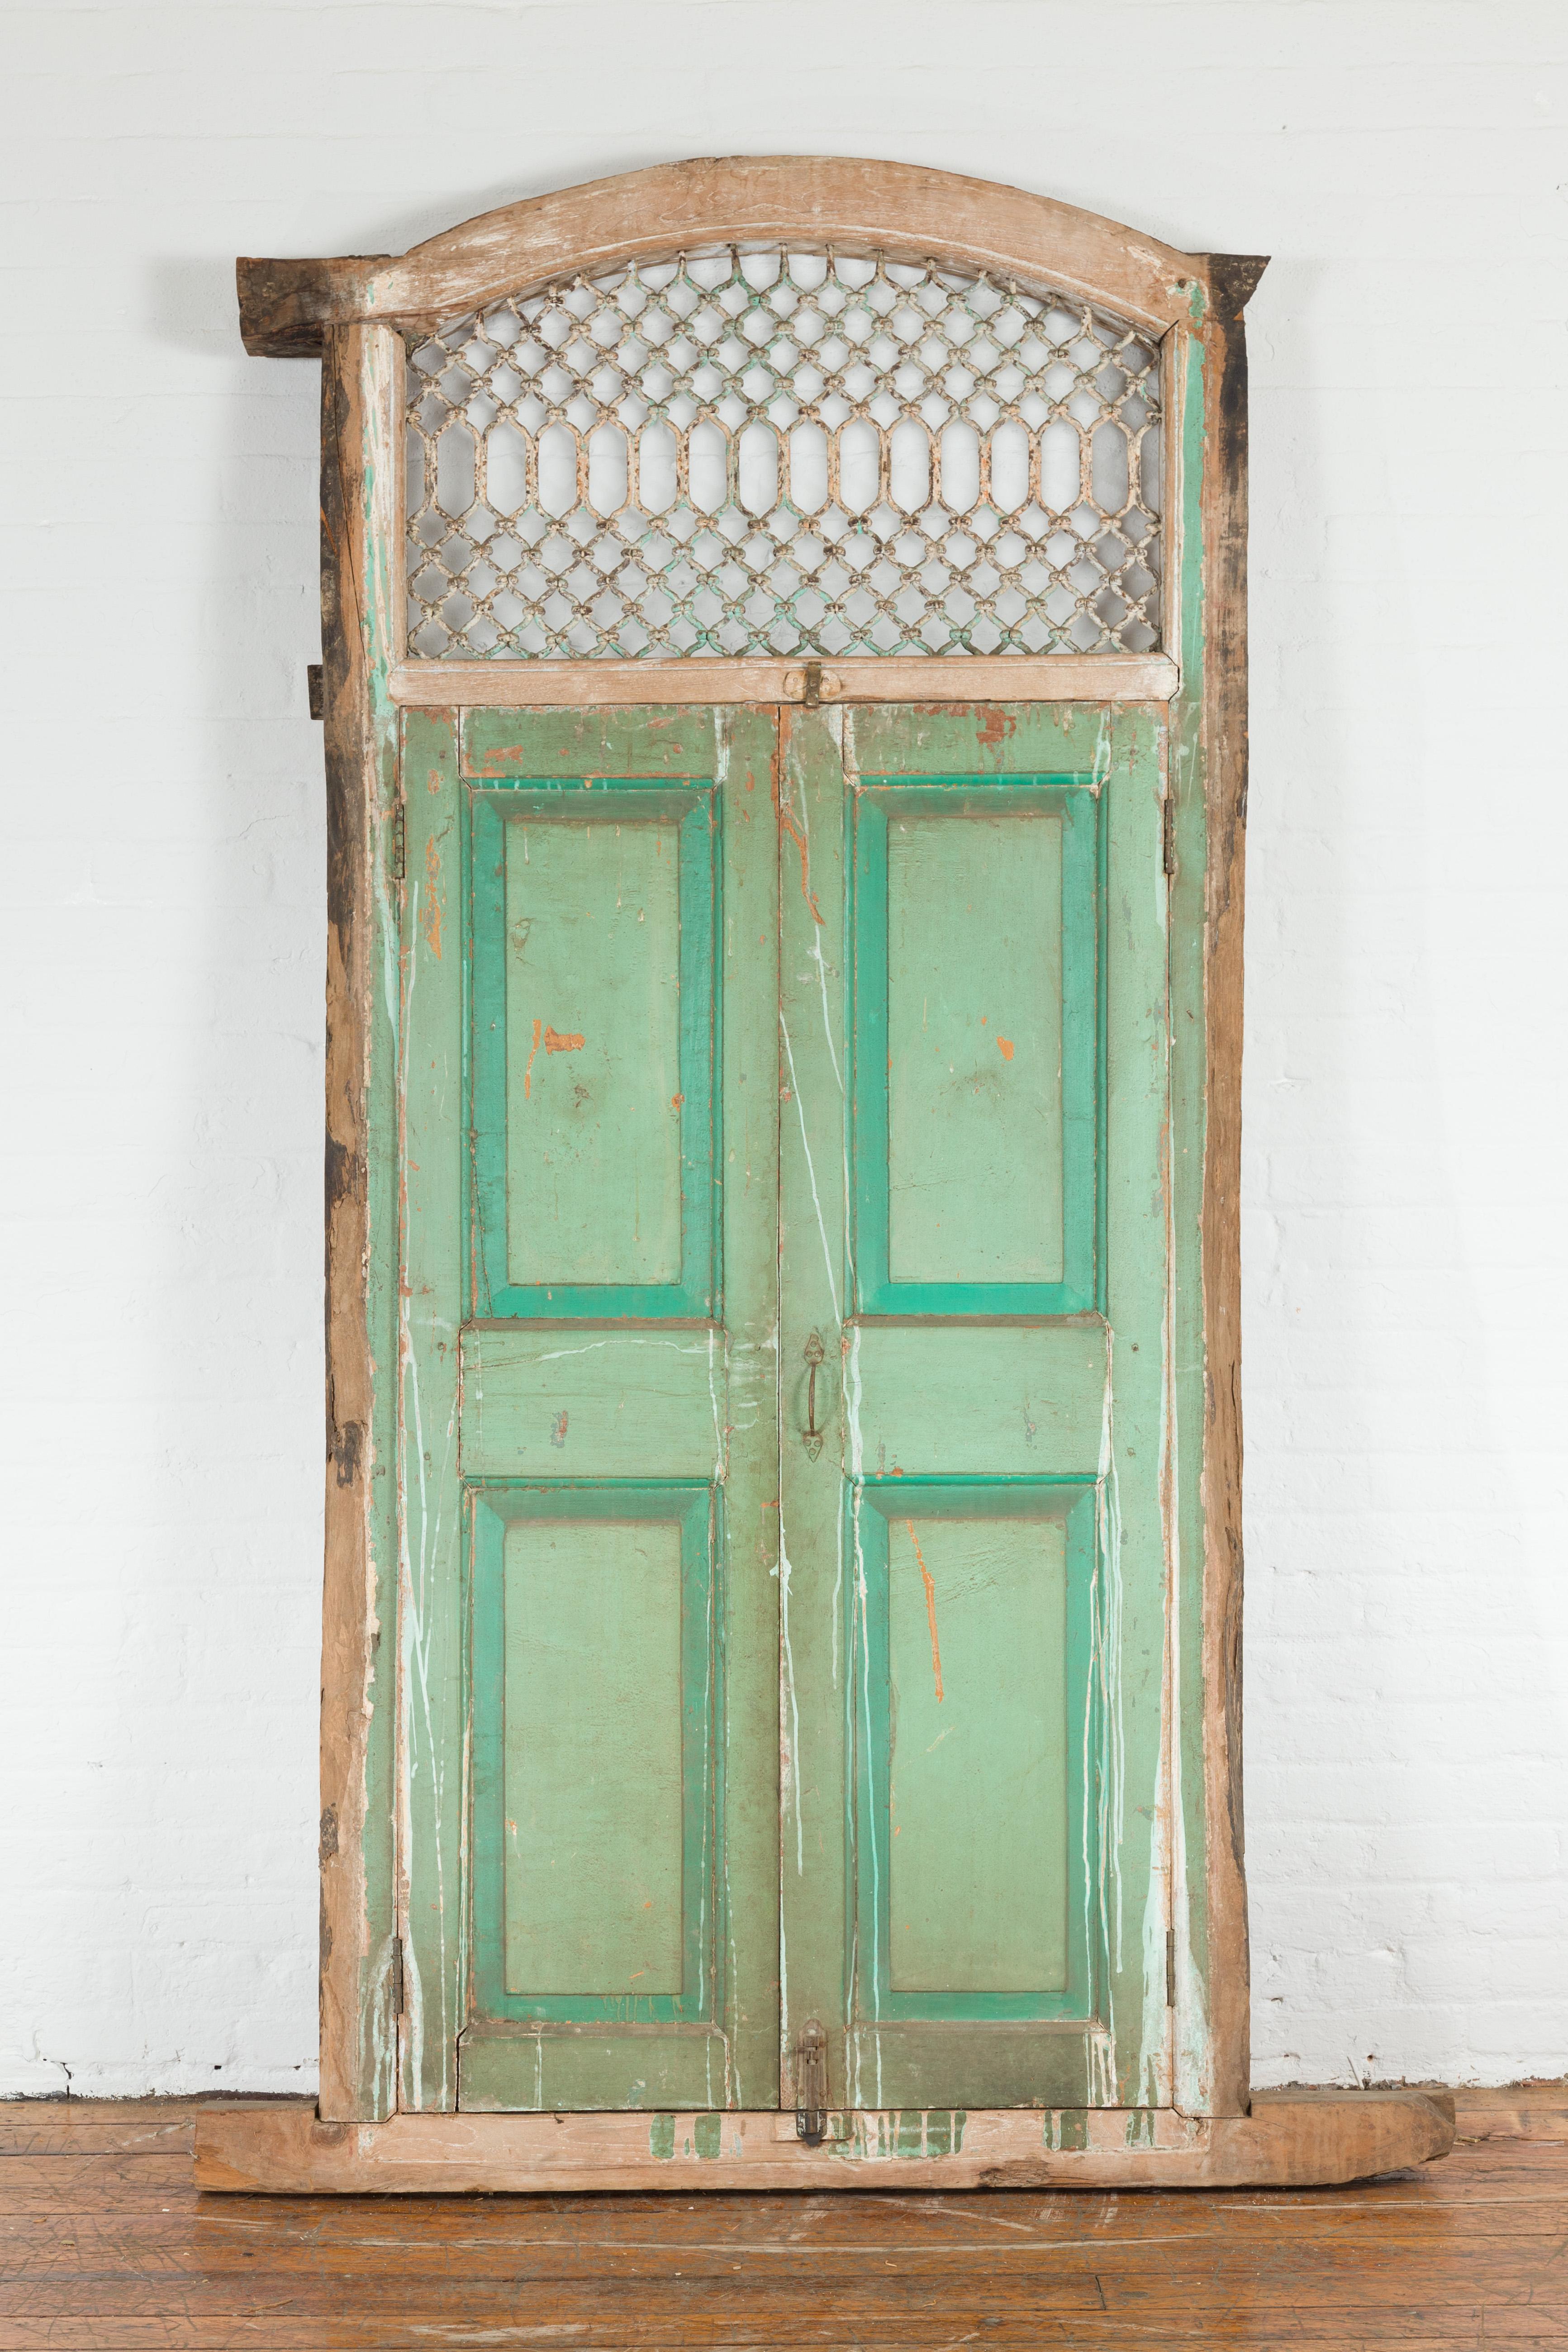 Ein antikes indisches Fenster aus Massivholz und Eisen aus dem 19. Jahrhundert, mit grüner Farbe und Patina. Dieses antike, hohe Fenster wurde im 19. Jahrhundert in Indien hergestellt und besteht aus einer schön gealterten Holzstruktur, die ein